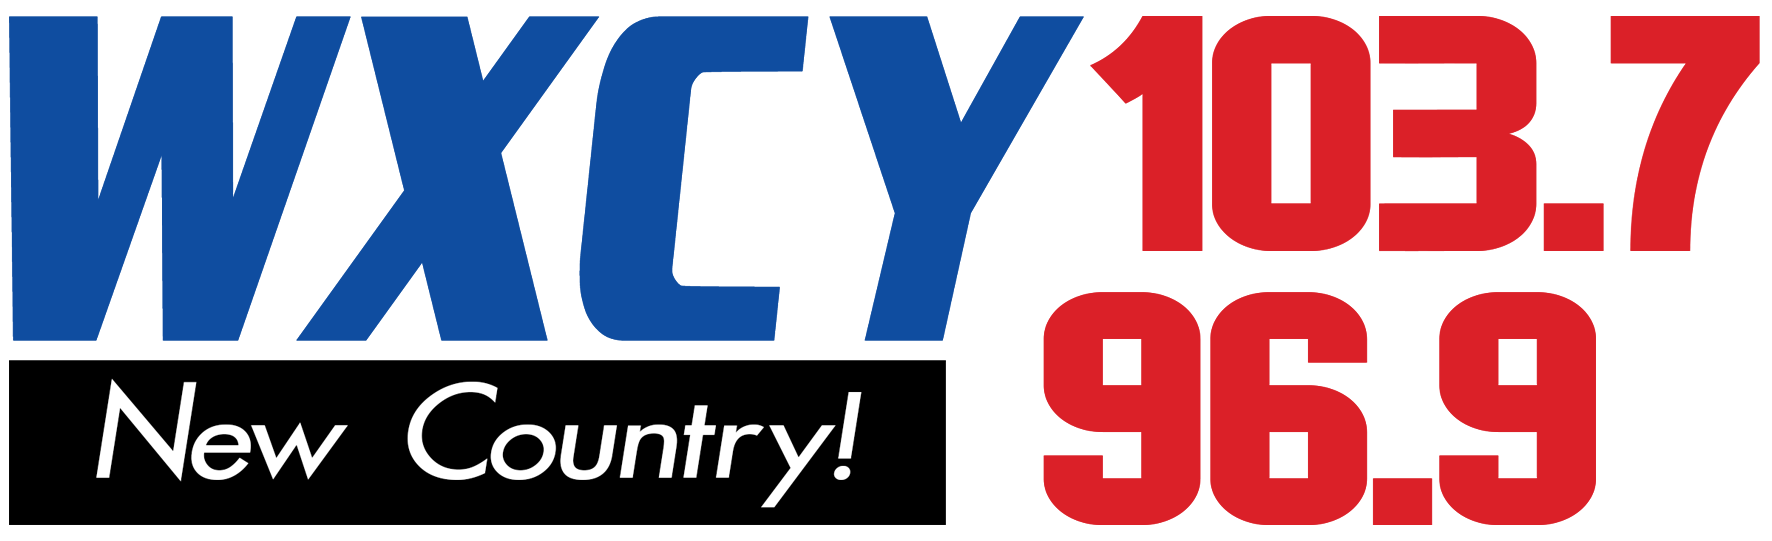 WXCY-FM